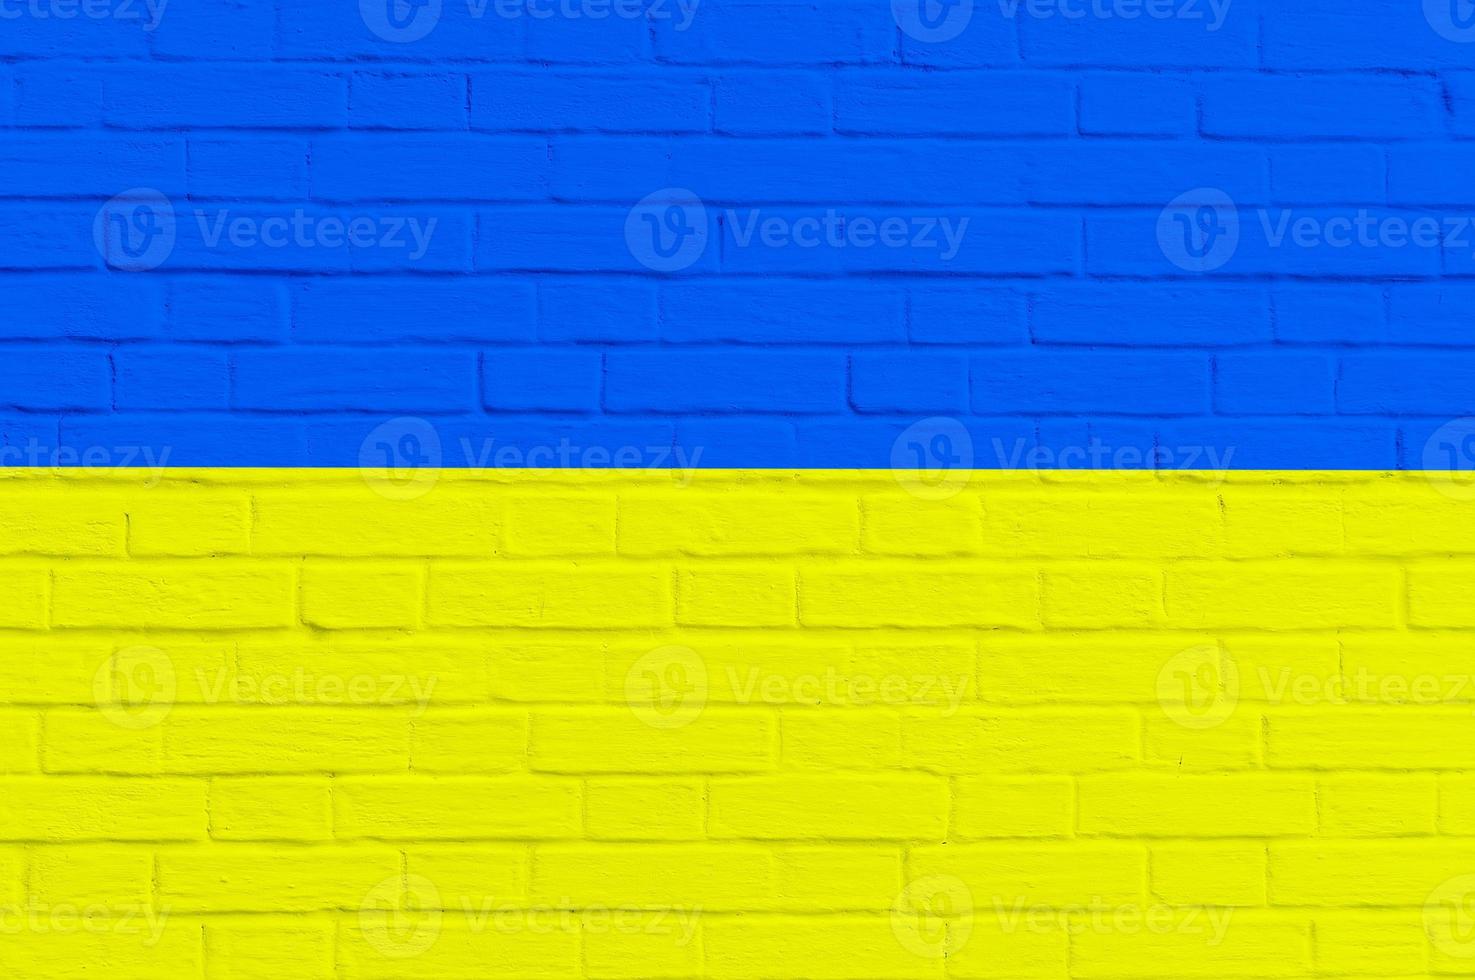 bandeira nacional da ucrânia no fundo da parede de tijolos foto